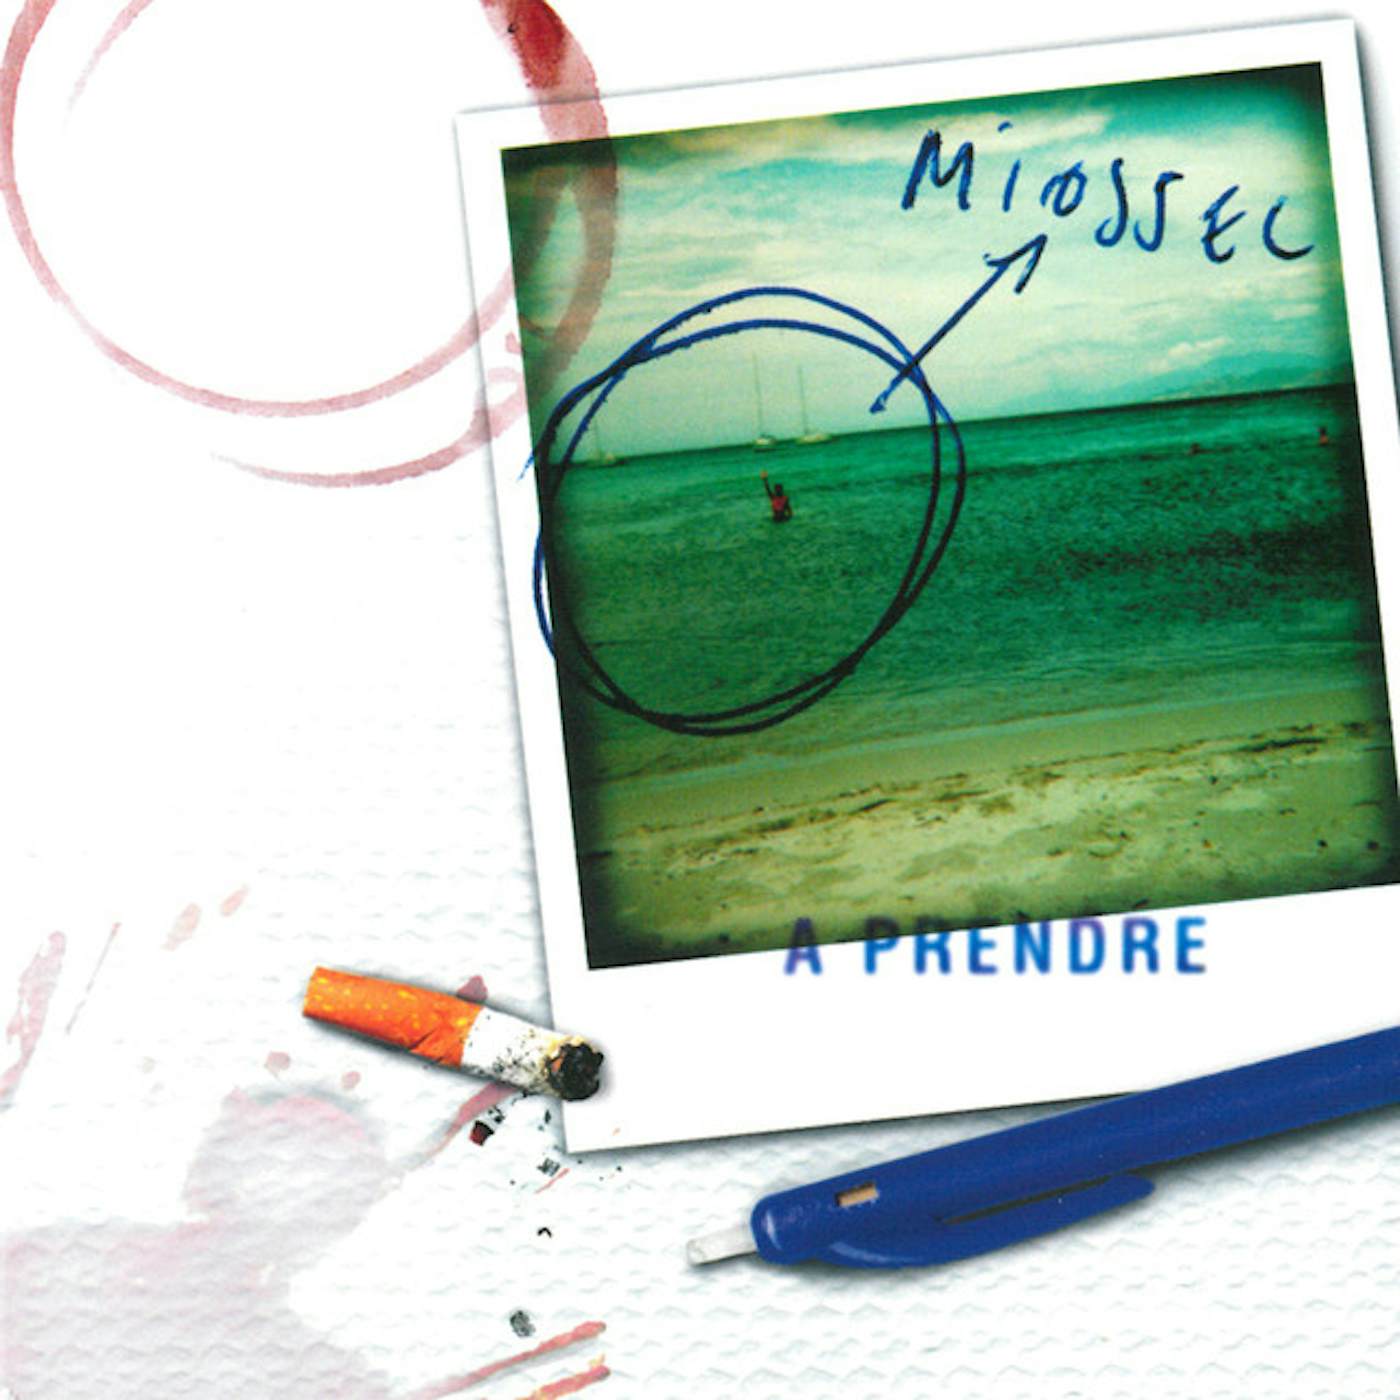 Miossec A Prendre Vinyl Record